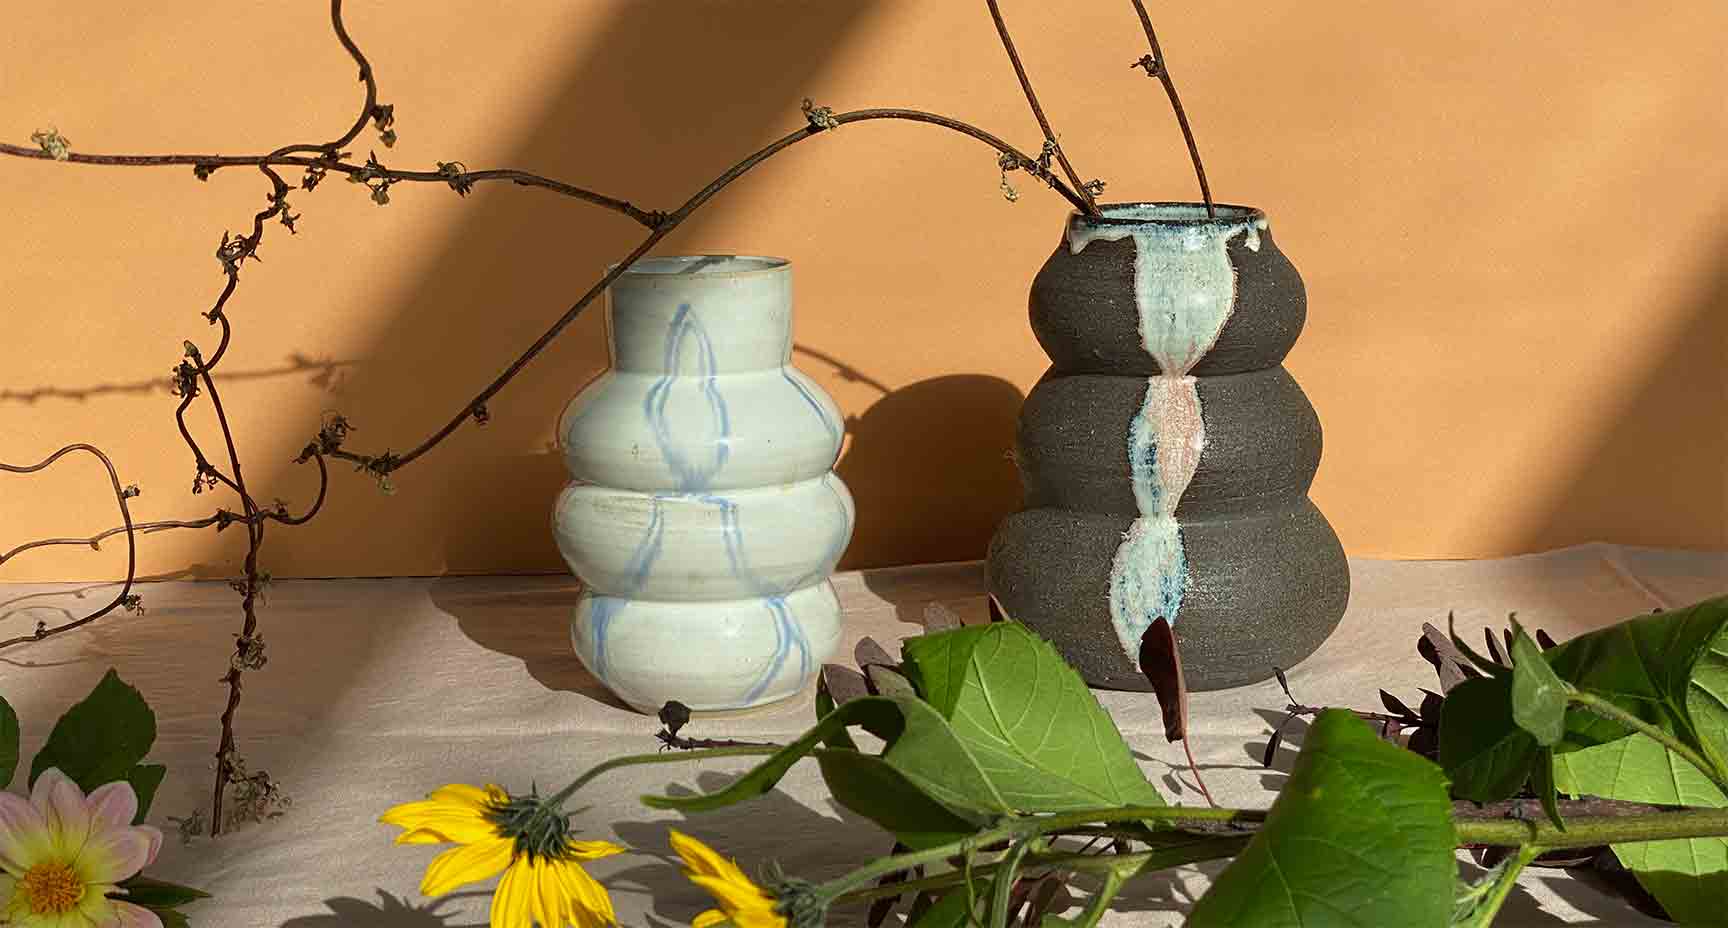 Rouen inspired vases